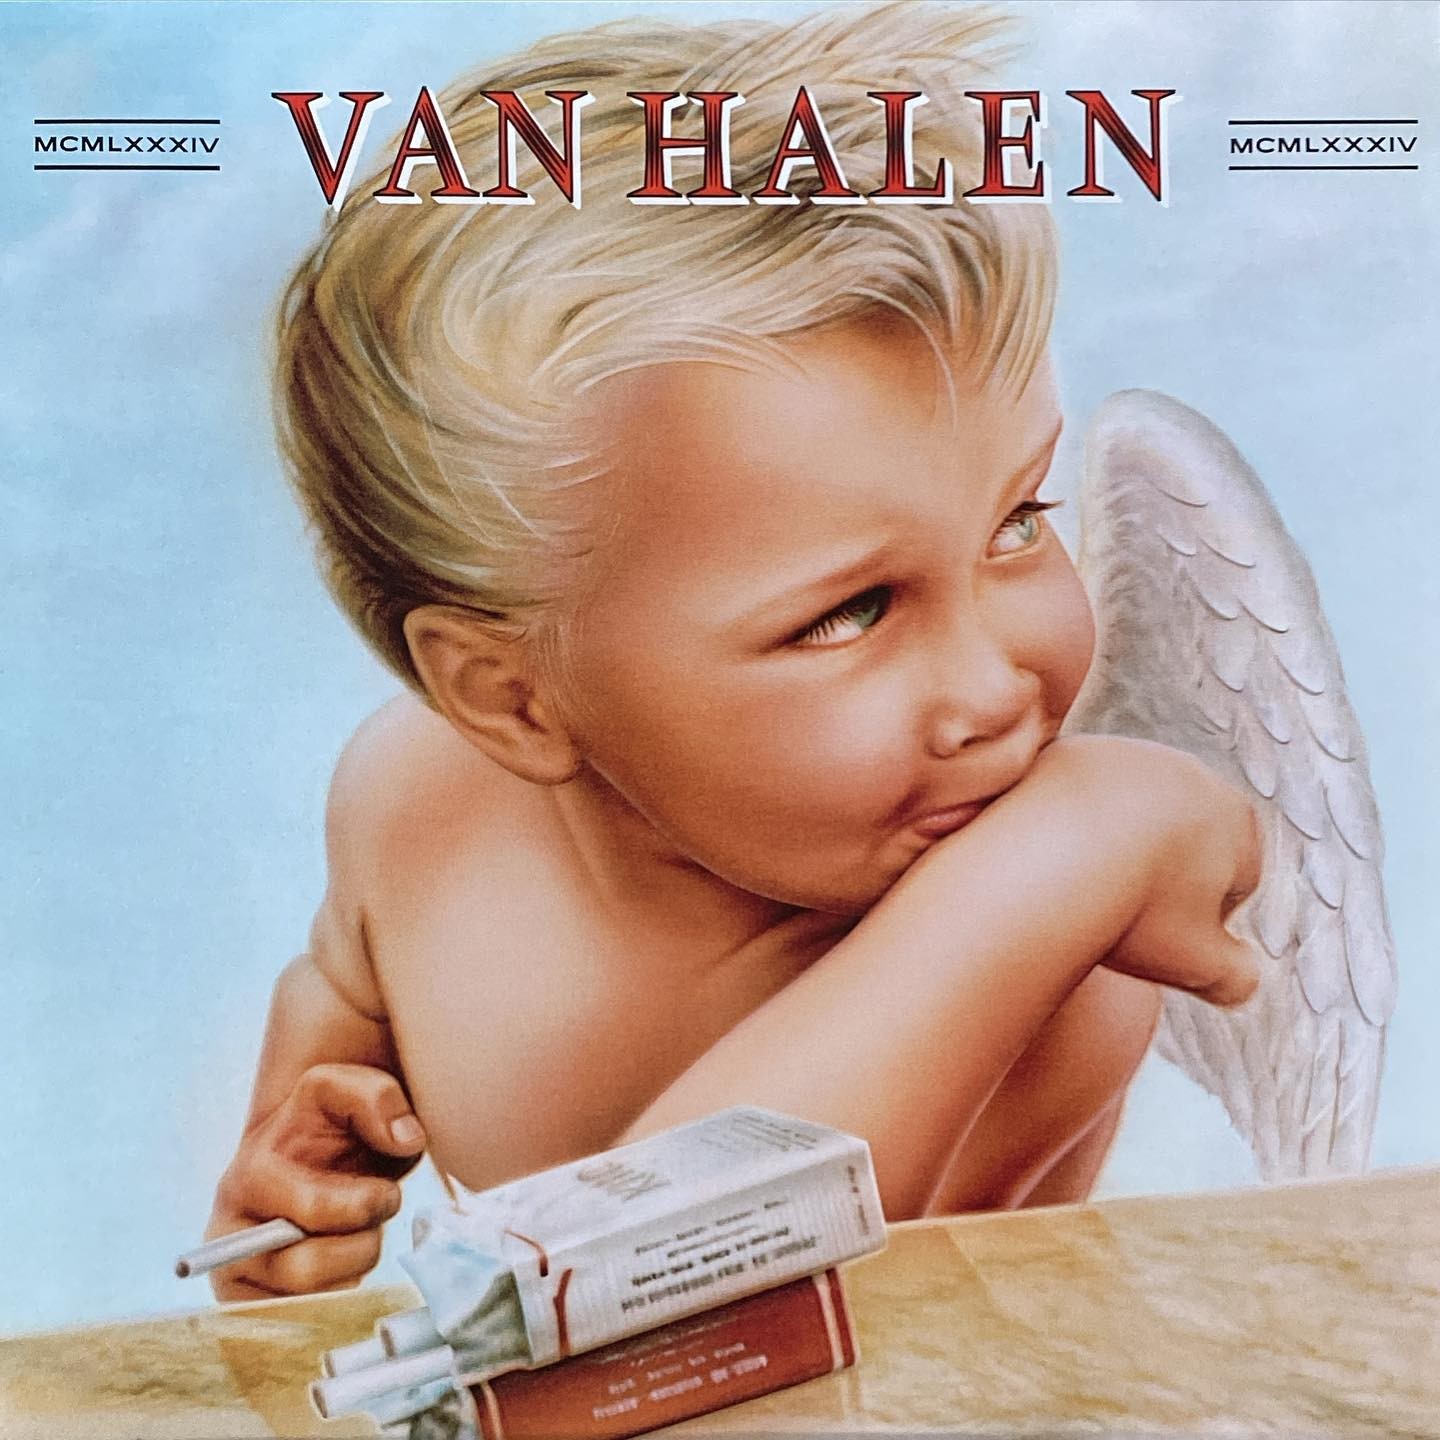 Van Halen - 1984 #vinylforbreakfast #jump #panama @vanhalen